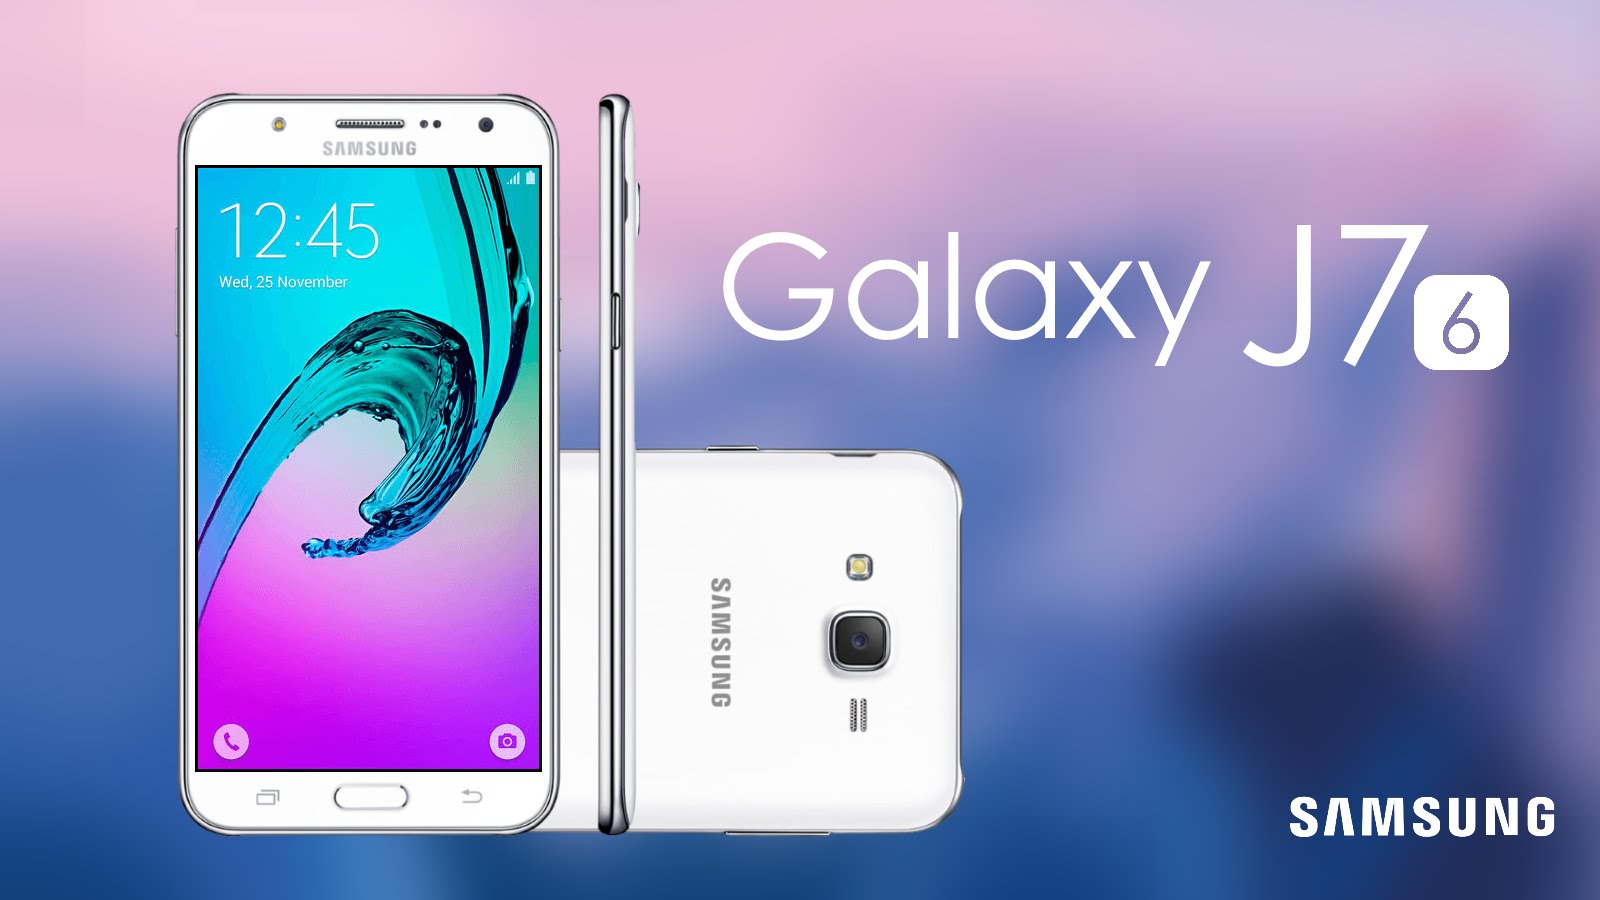 Samsung Đã Tung Ra Nhiều Smartphone Tầm Trung Hấp Dẫn - Samsung Galaxy J7 6 , HD Wallpaper & Backgrounds